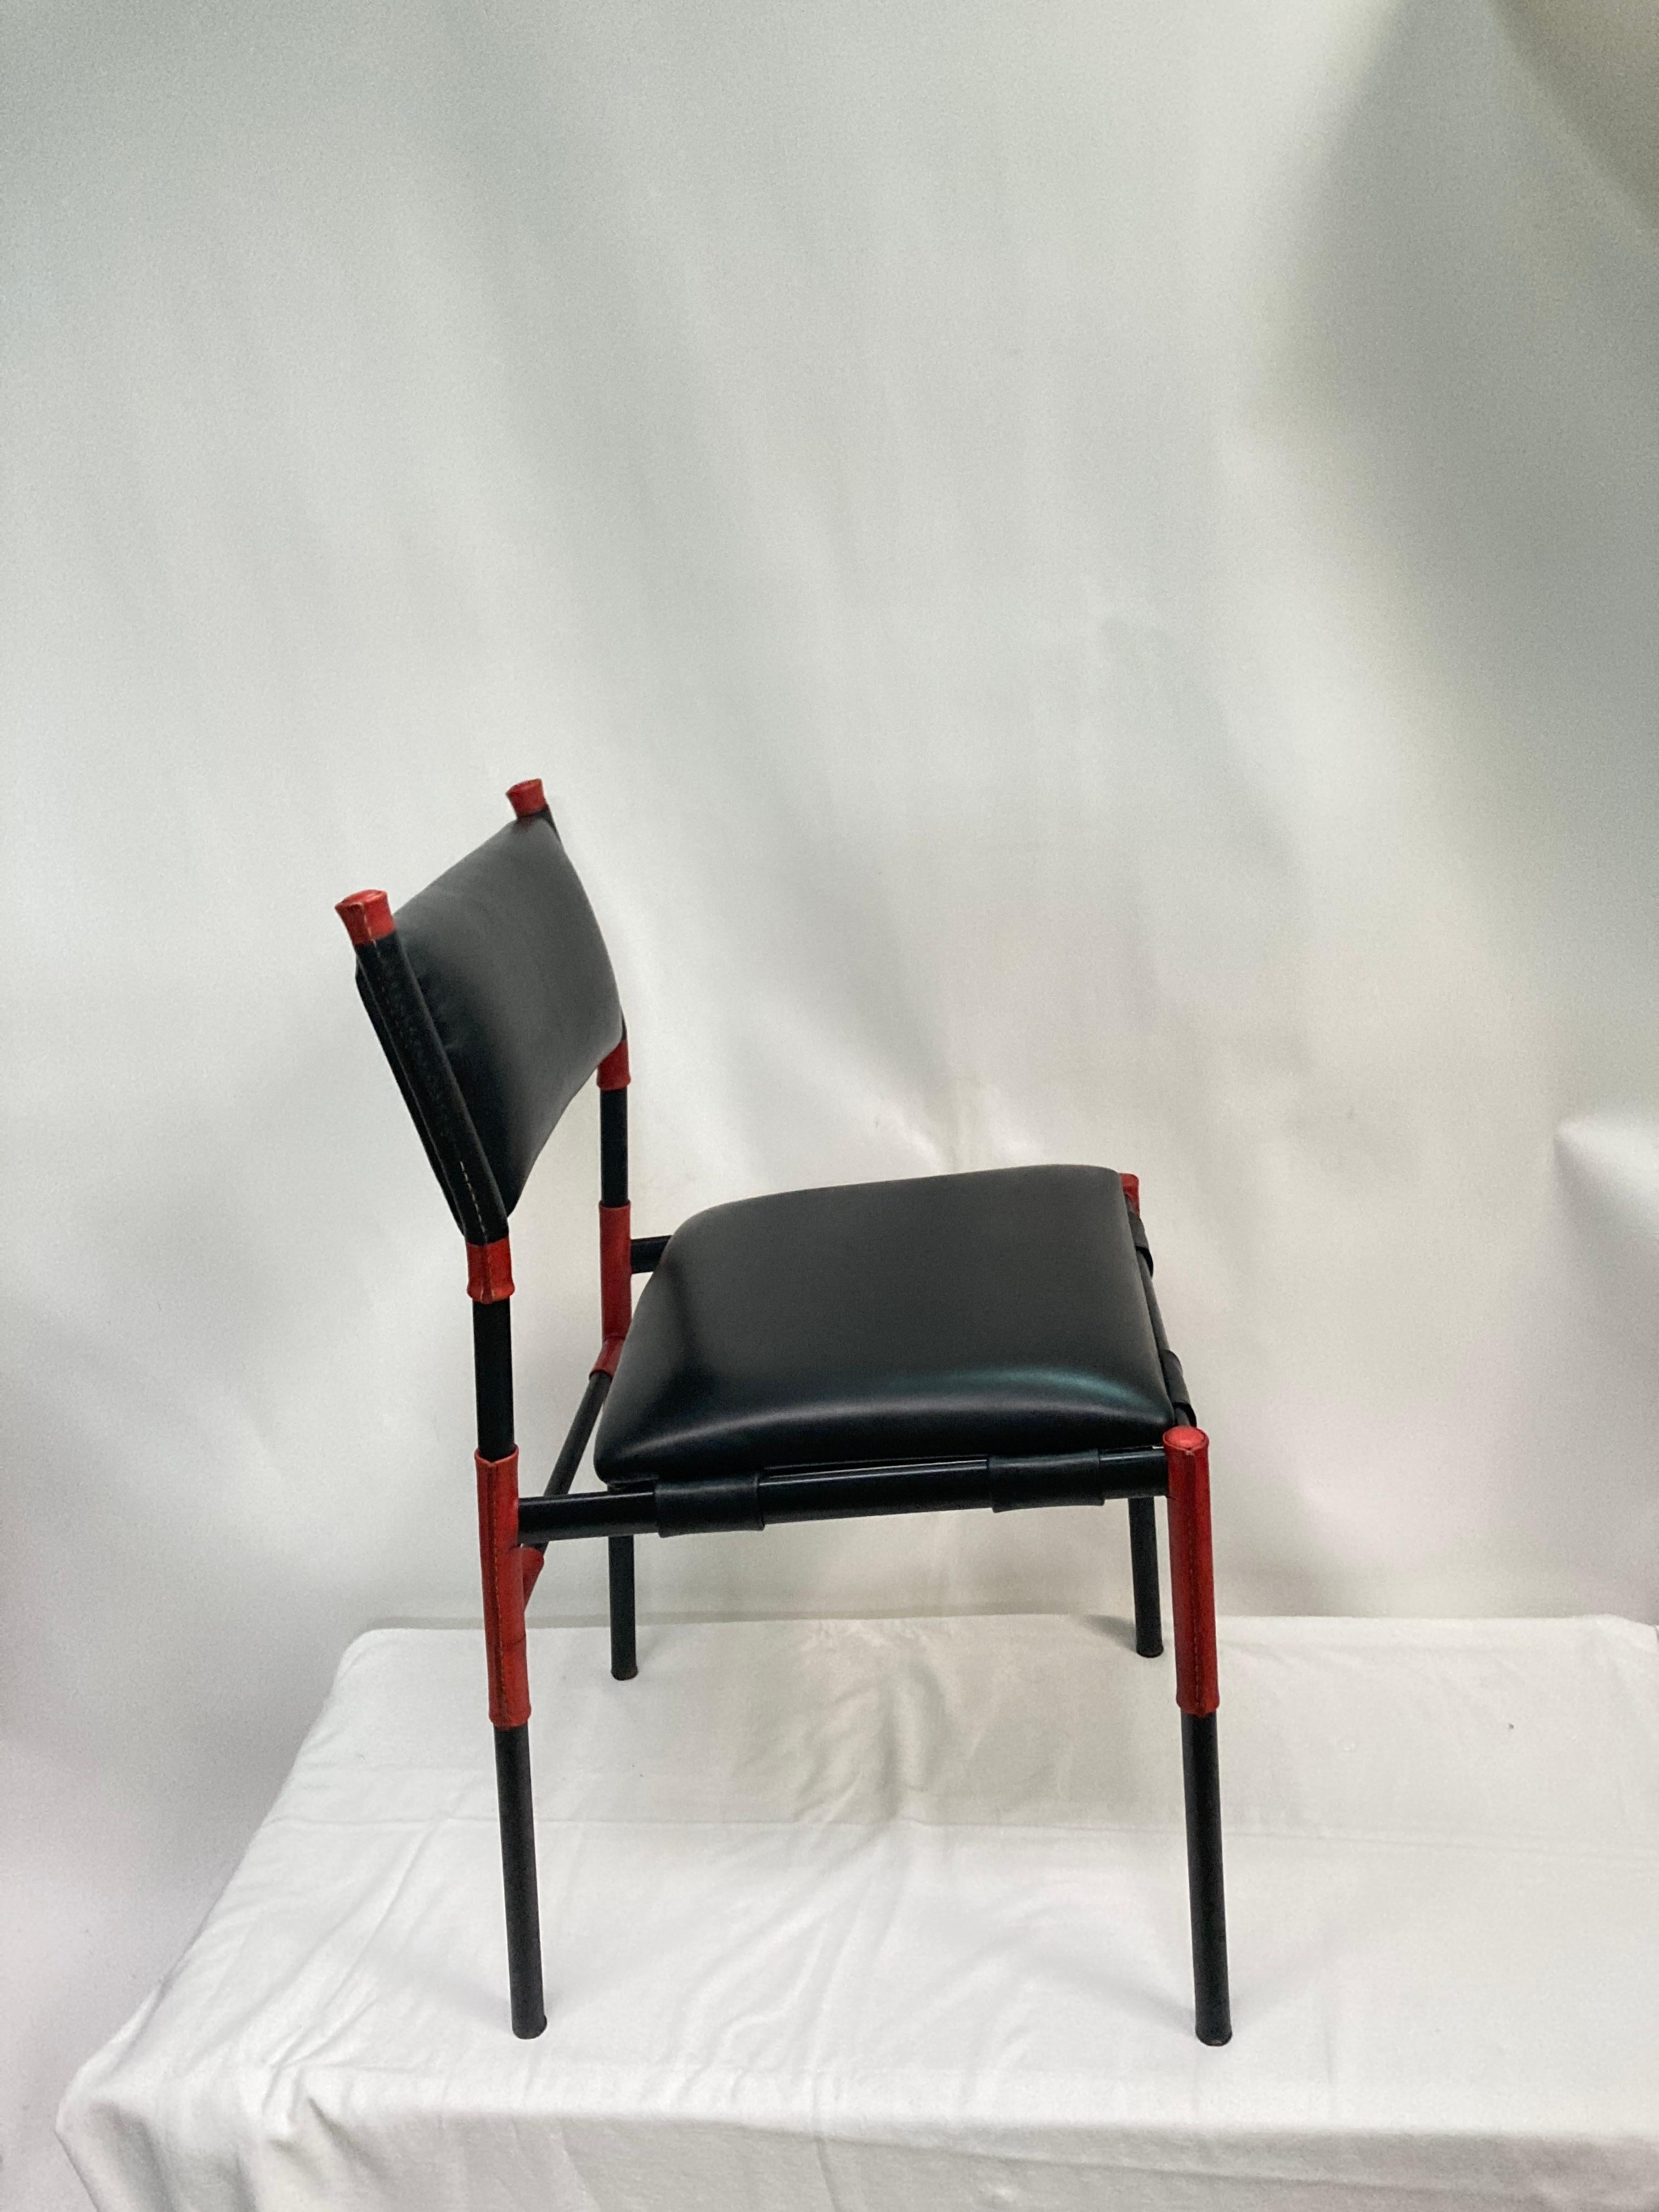 Zweifarbige Stühle aus genähtem Leder aus den 1950er Jahren
Schwarzes und rotes Leder
Entworfen von Jacques Adnet